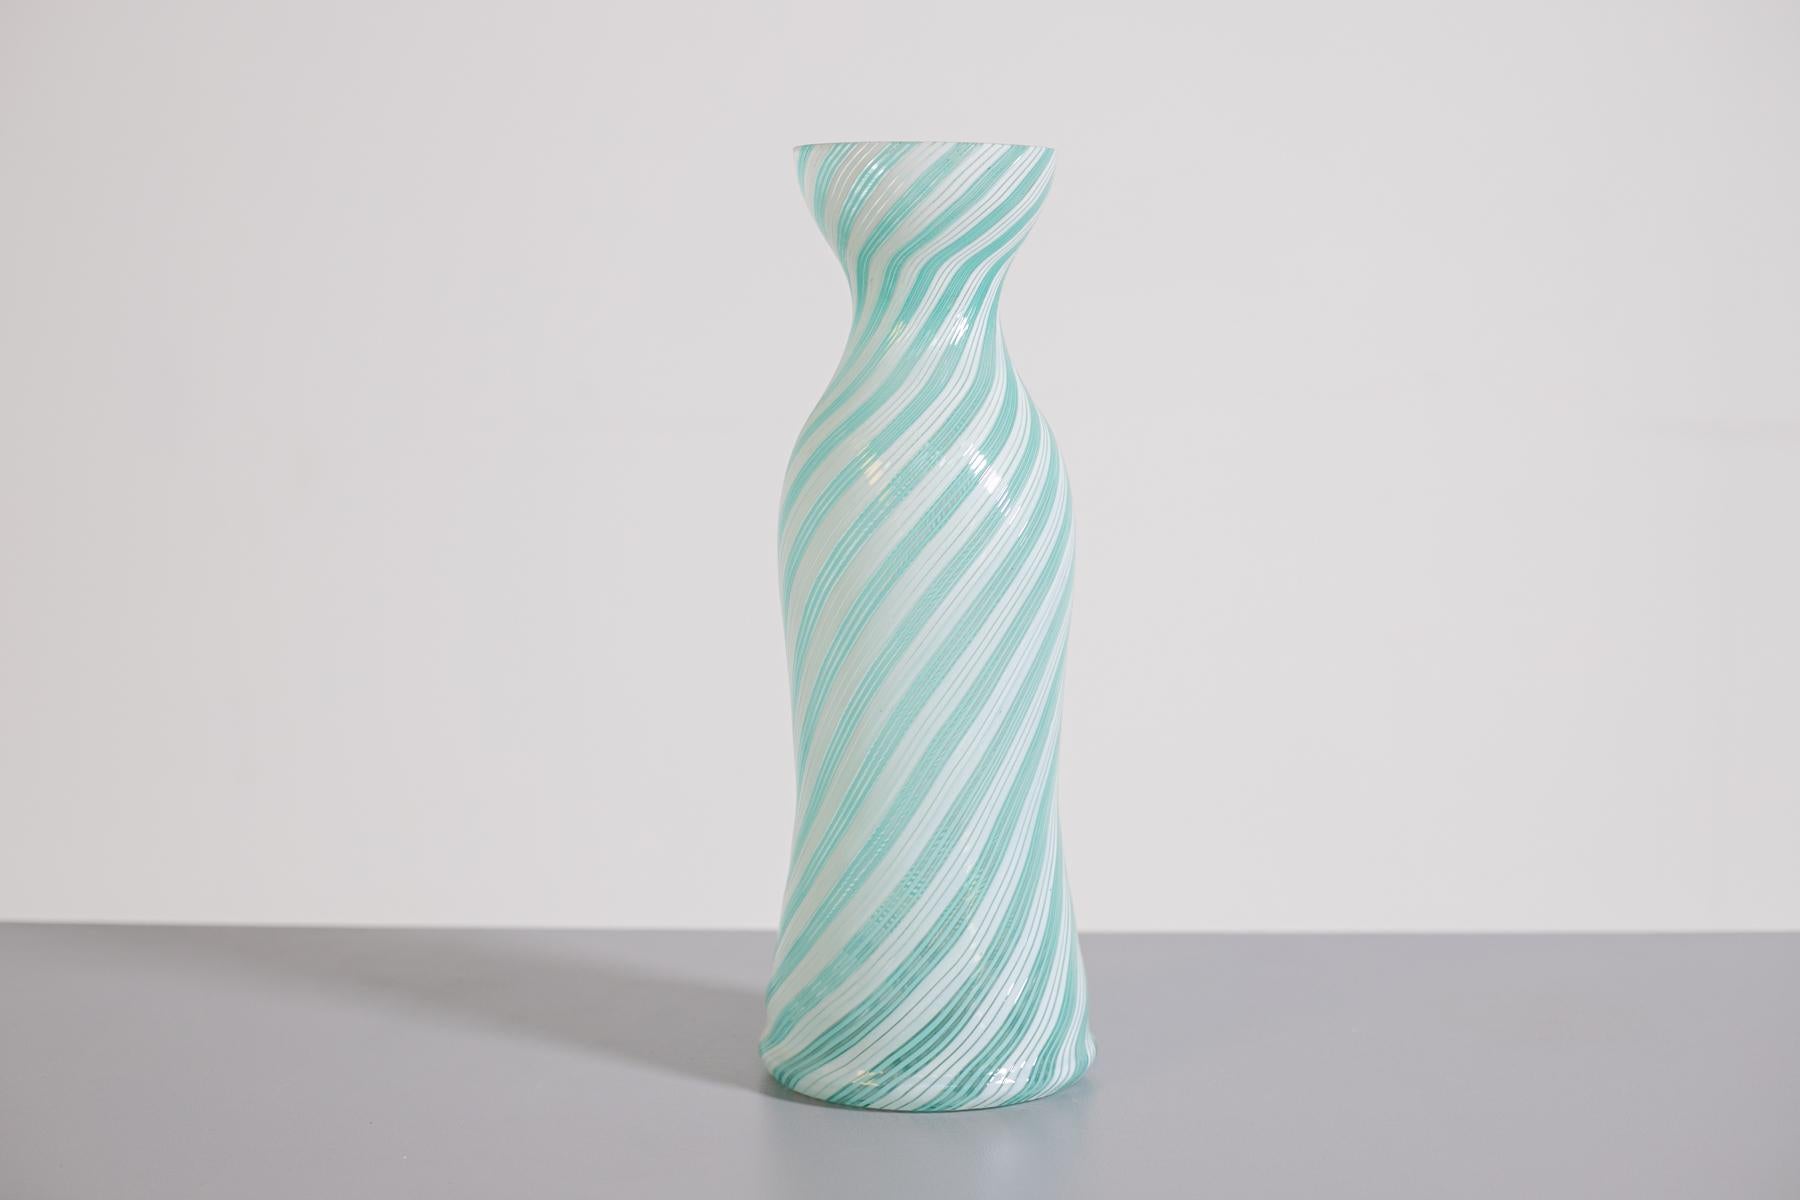 Vase von Dino Martens für Barovier&Toso, 1954. Die Vase ist in der Technik der halben Filigranität gearbeitet. Die Vase von Dino Martens ist das Modell 6049, 1954 - Murano.
Die Farben der Vase sind weißes und blaues Murano-Glas.
Ausgezeichneter